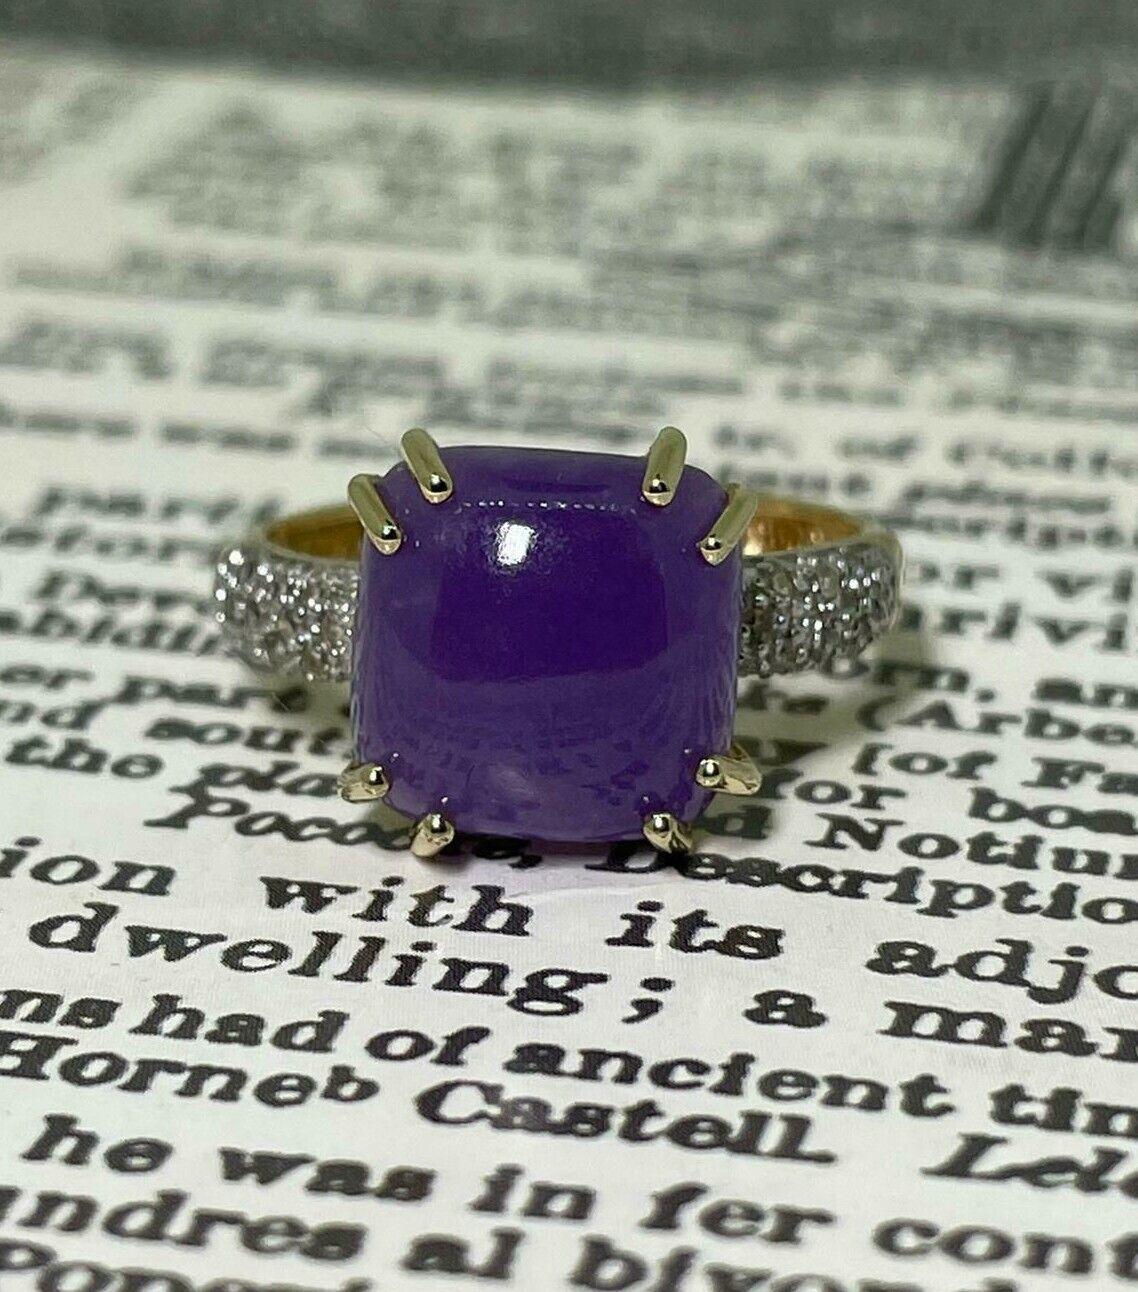 Fabelhaft gestaltet als Cocktailring 
dieser Vintage-Ring ist mit einem natürlichen Zuckerhut-Quarz besetzt 
mit den Maßen 11mm x 11mm
von ca. 3,00ct. 
von atemberaubender violetter Farbe, 
8-Krallen-Satz 

Die Schultern sind mit Diamanten